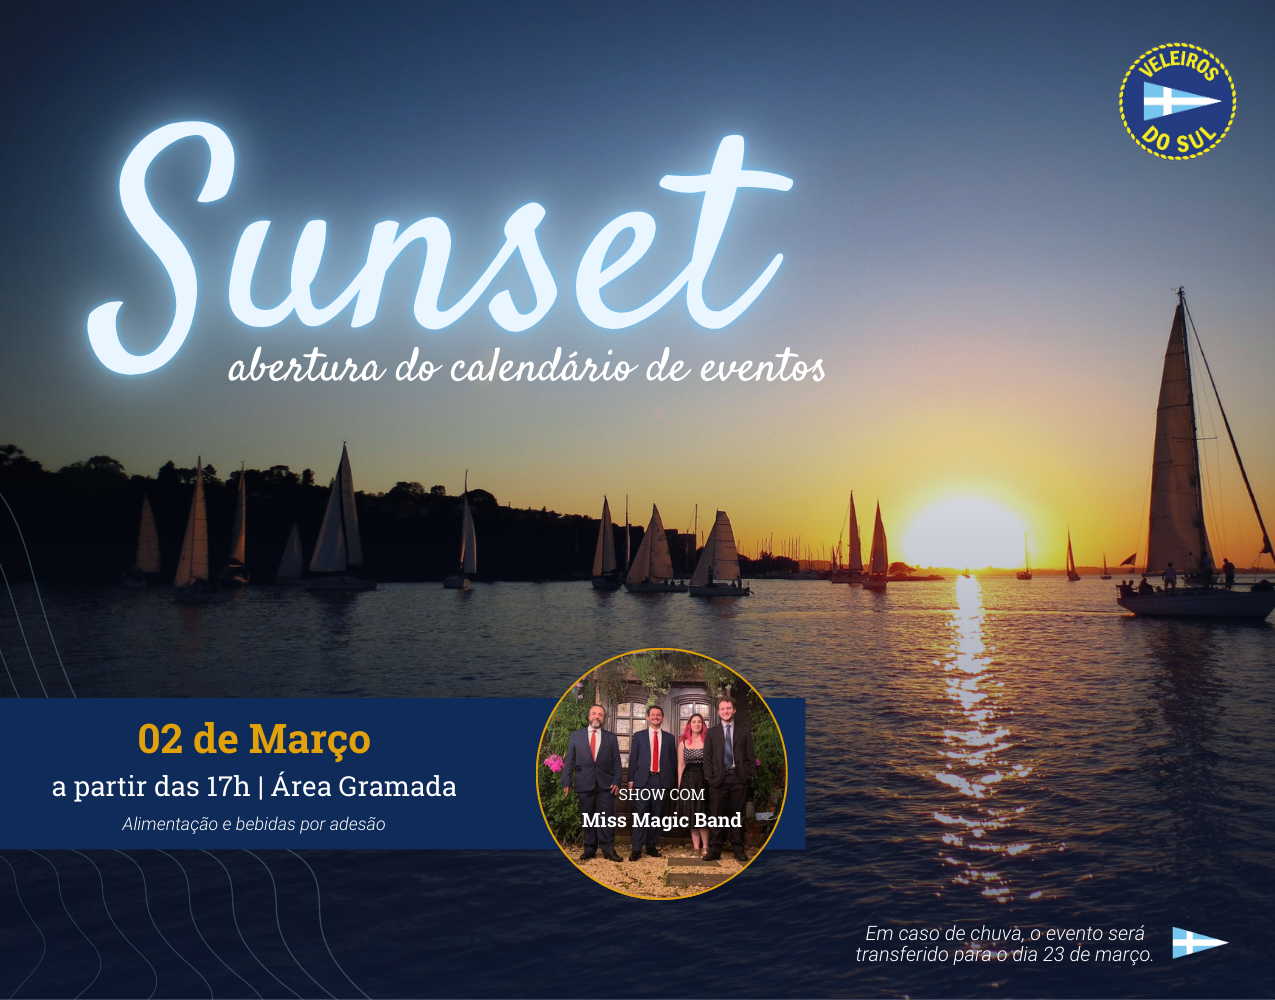 Sunset VDS deste sábado abrirá o calendário de eventos! Participe